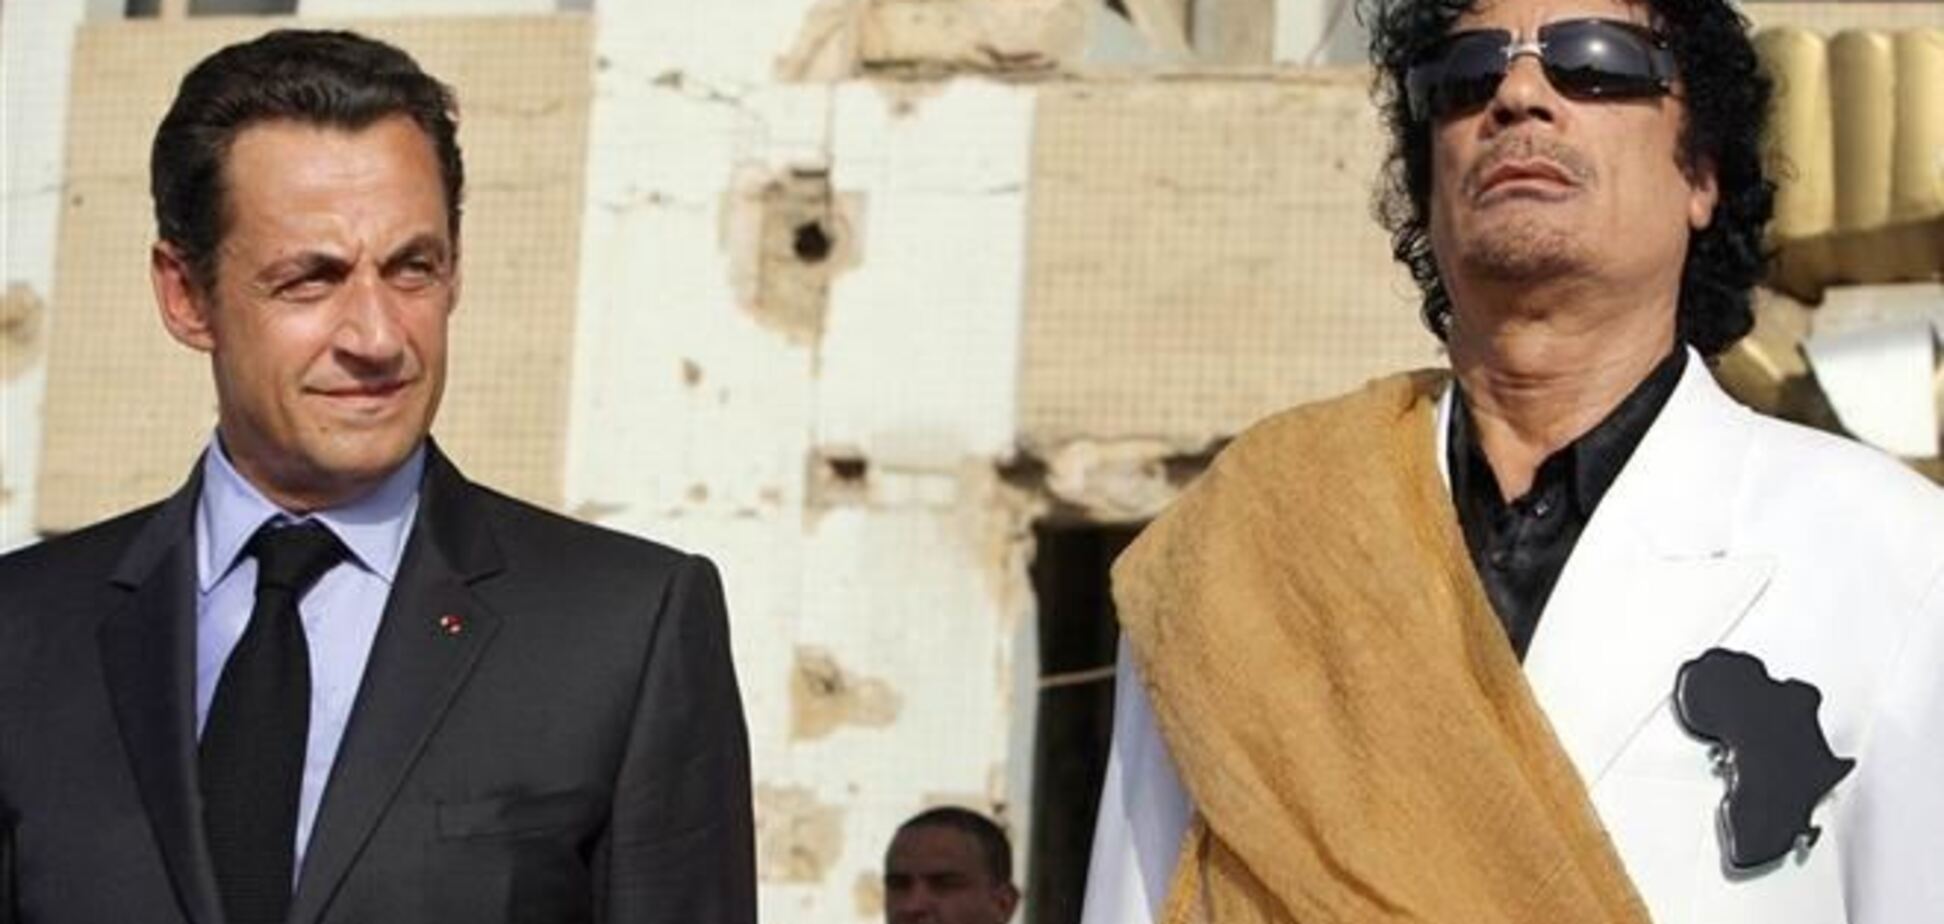 Французький телеканал показав інтерв'ю Каддафі про фінансування кампанії Саркозі